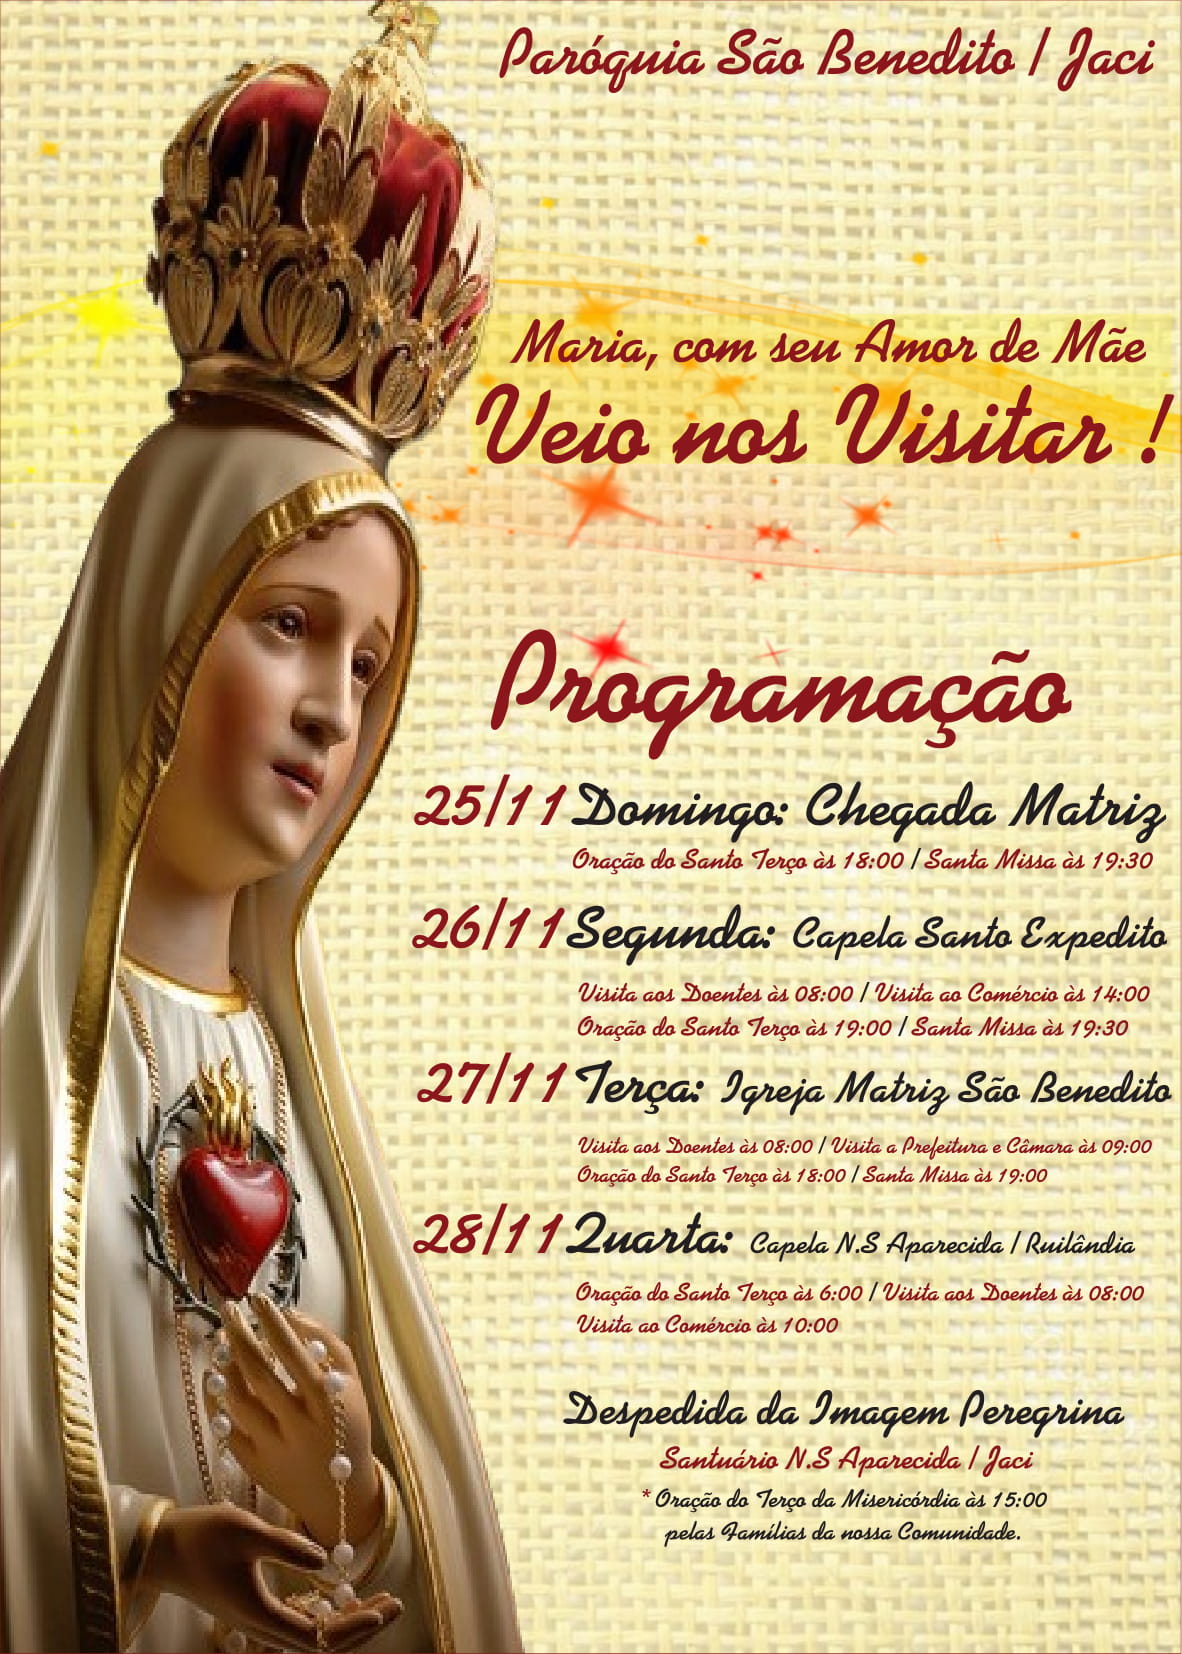 Paróquia São Benedito, Jaci: “Maria veio nos visitar”